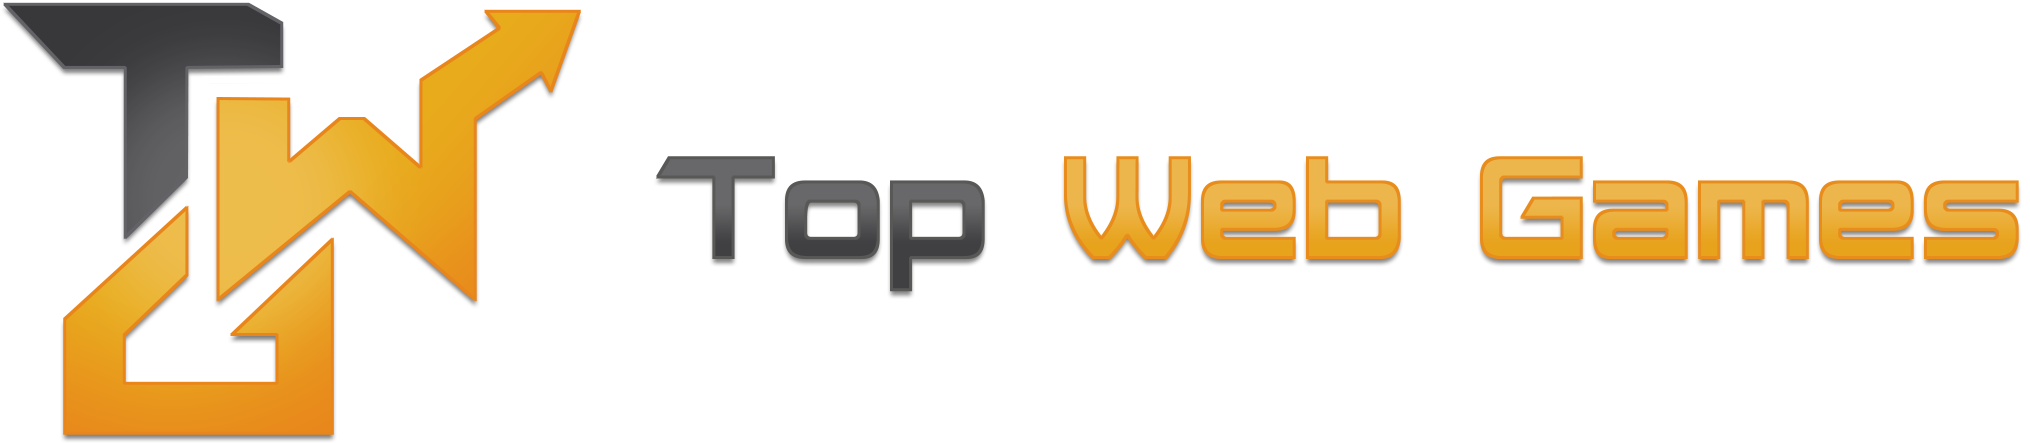 Top web games logo